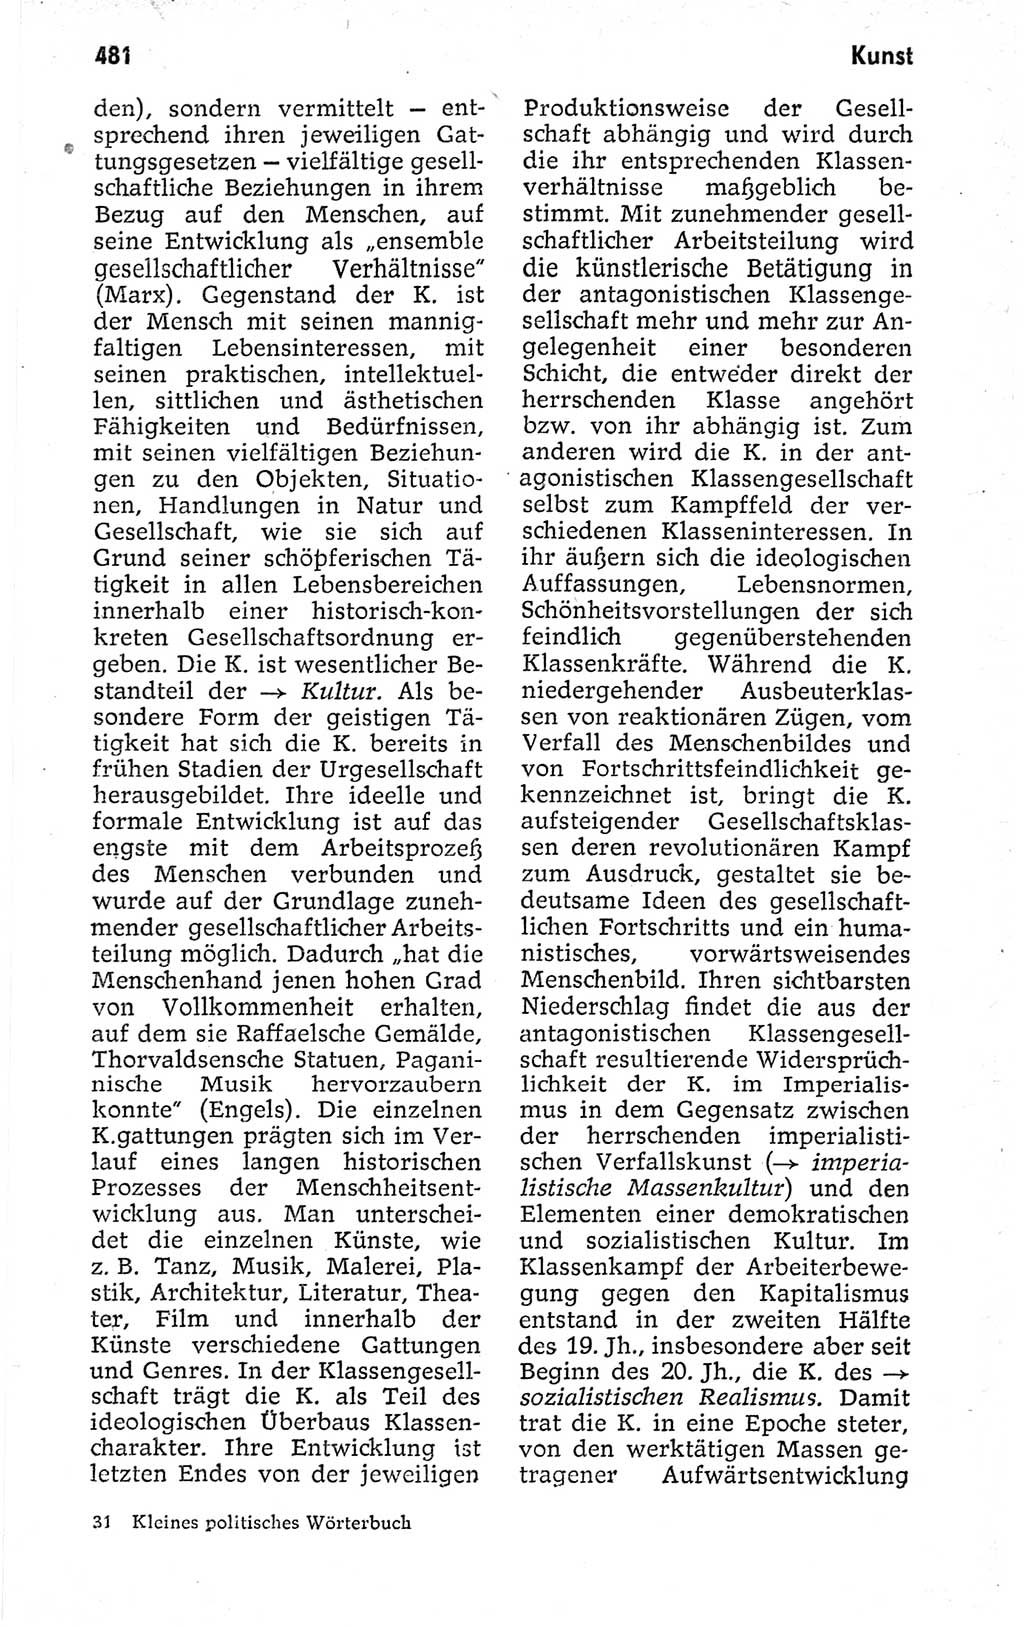 Kleines politisches Wörterbuch [Deutsche Demokratische Republik (DDR)] 1973, Seite 481 (Kl. pol. Wb. DDR 1973, S. 481)